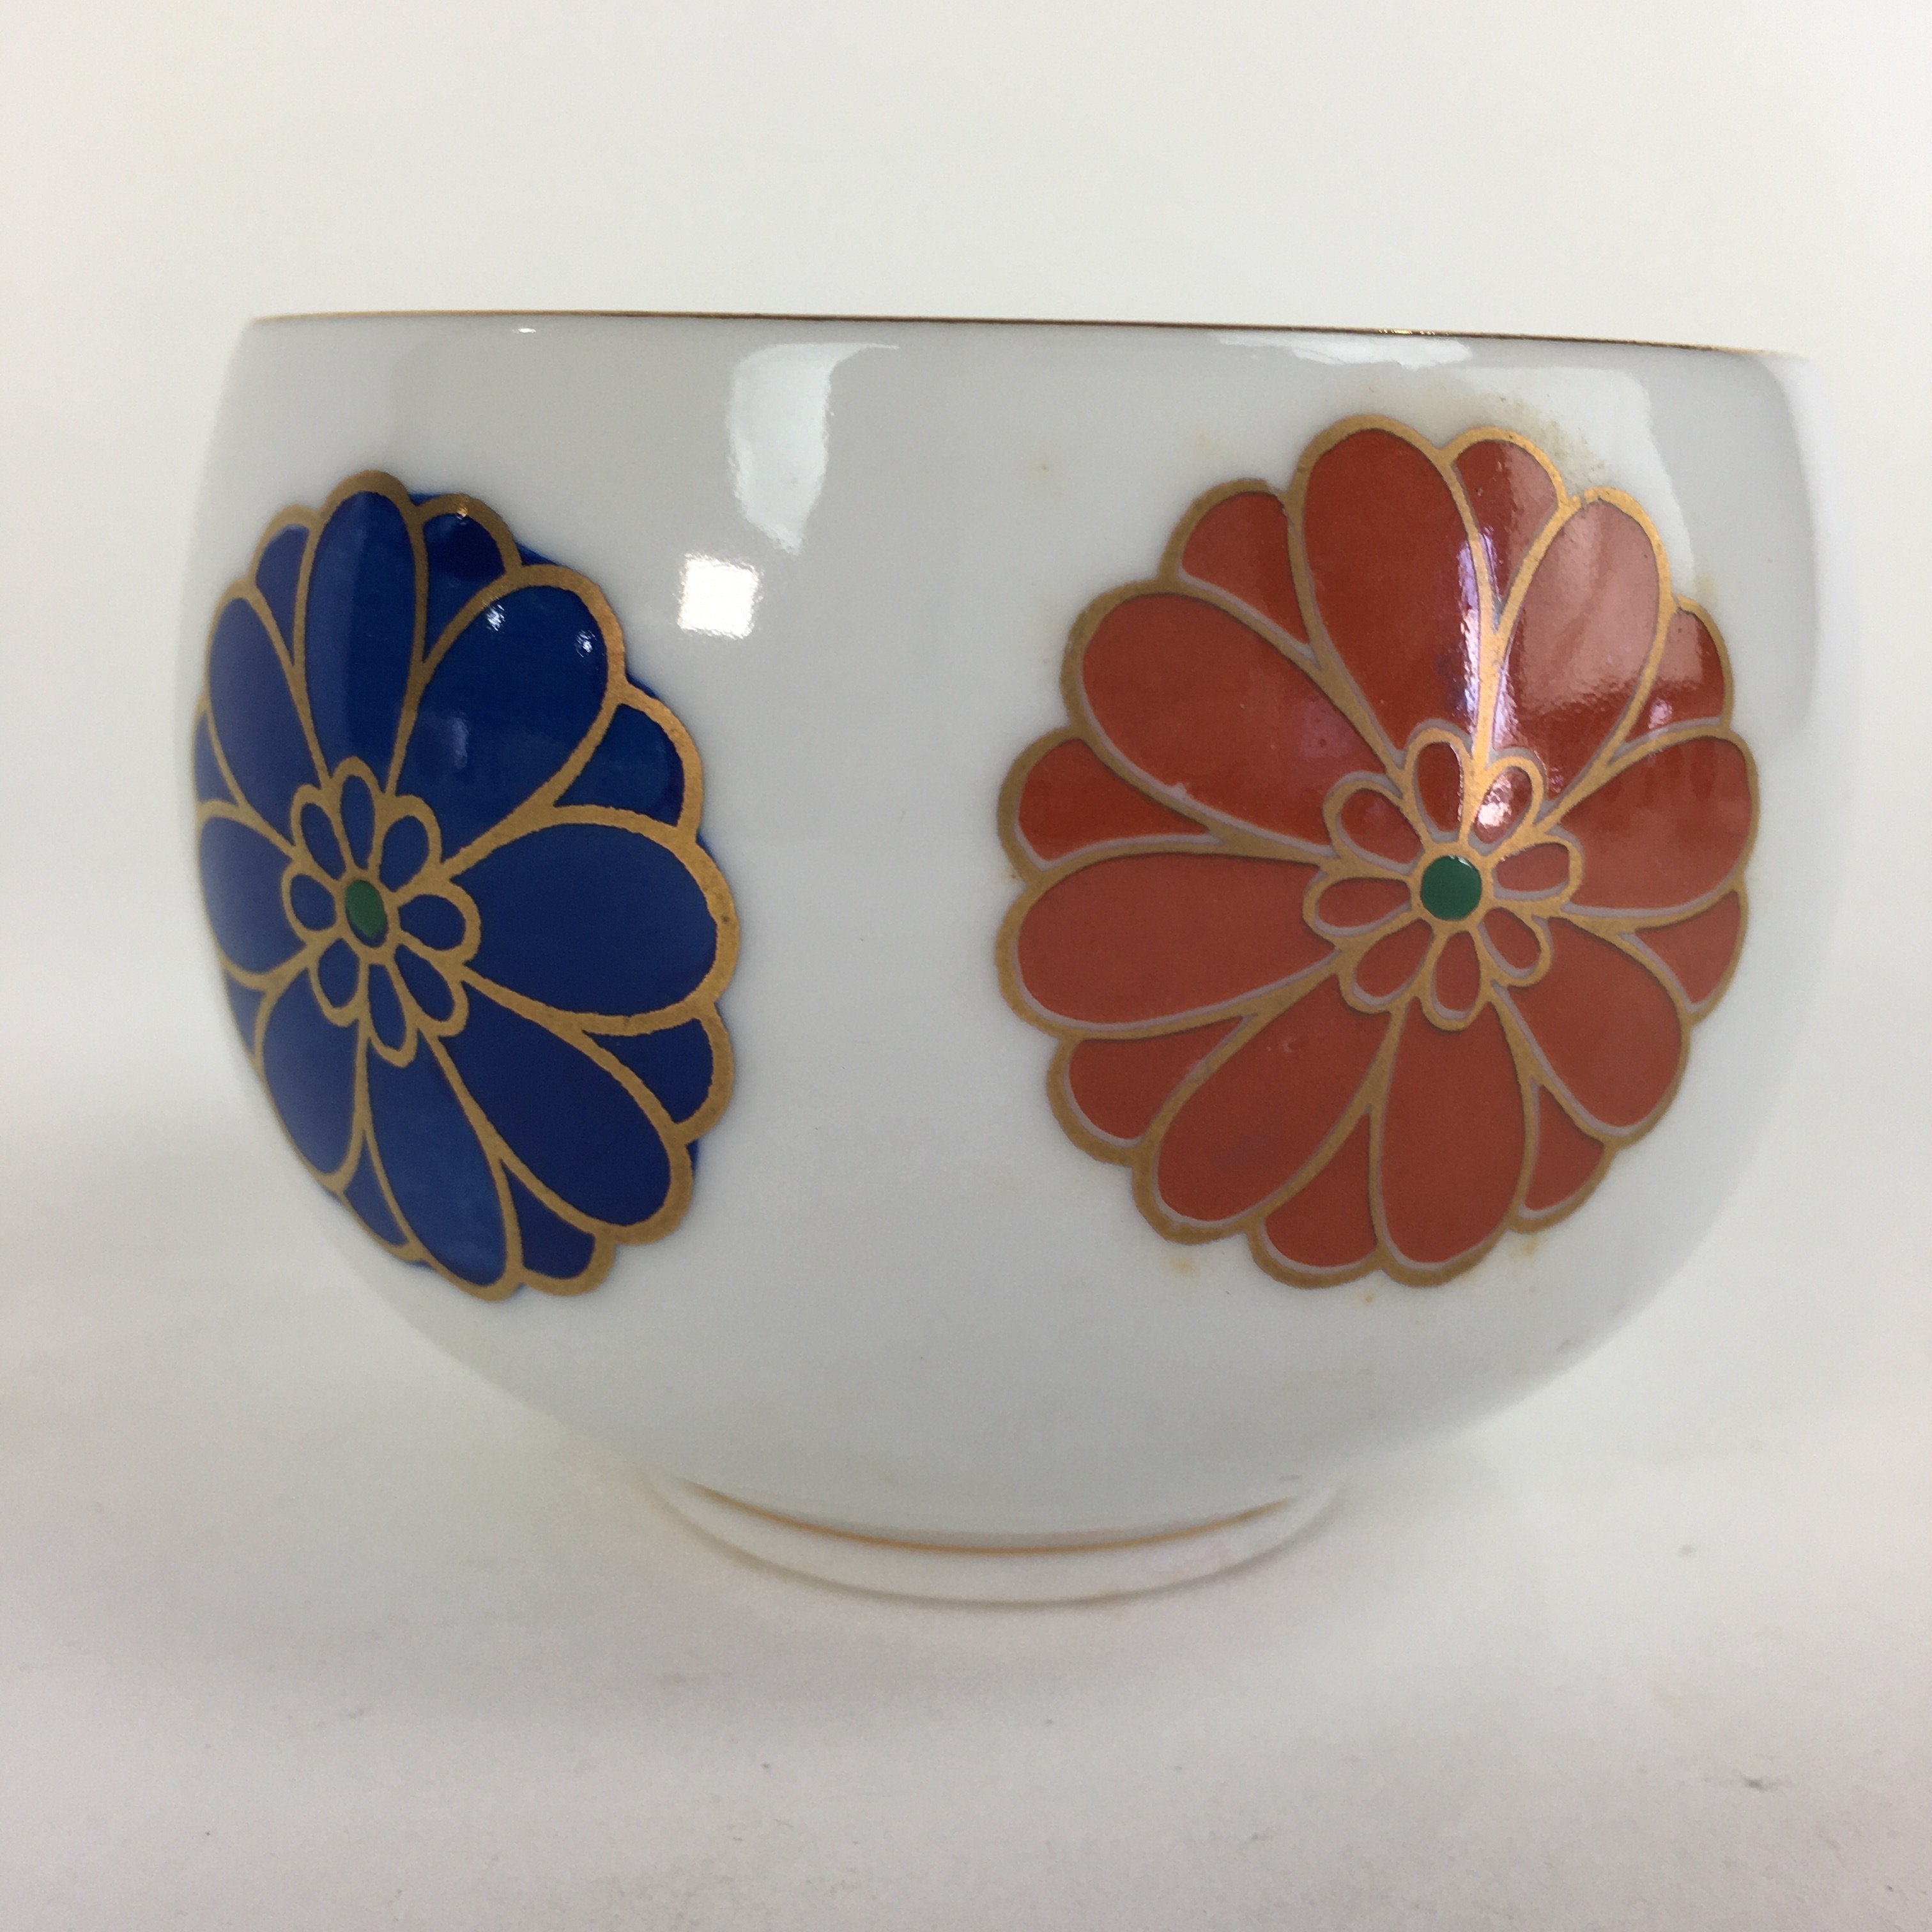 Japanese Porcelain Teacup Yunomi Vtg Chrysanthemum White Sencha TC199